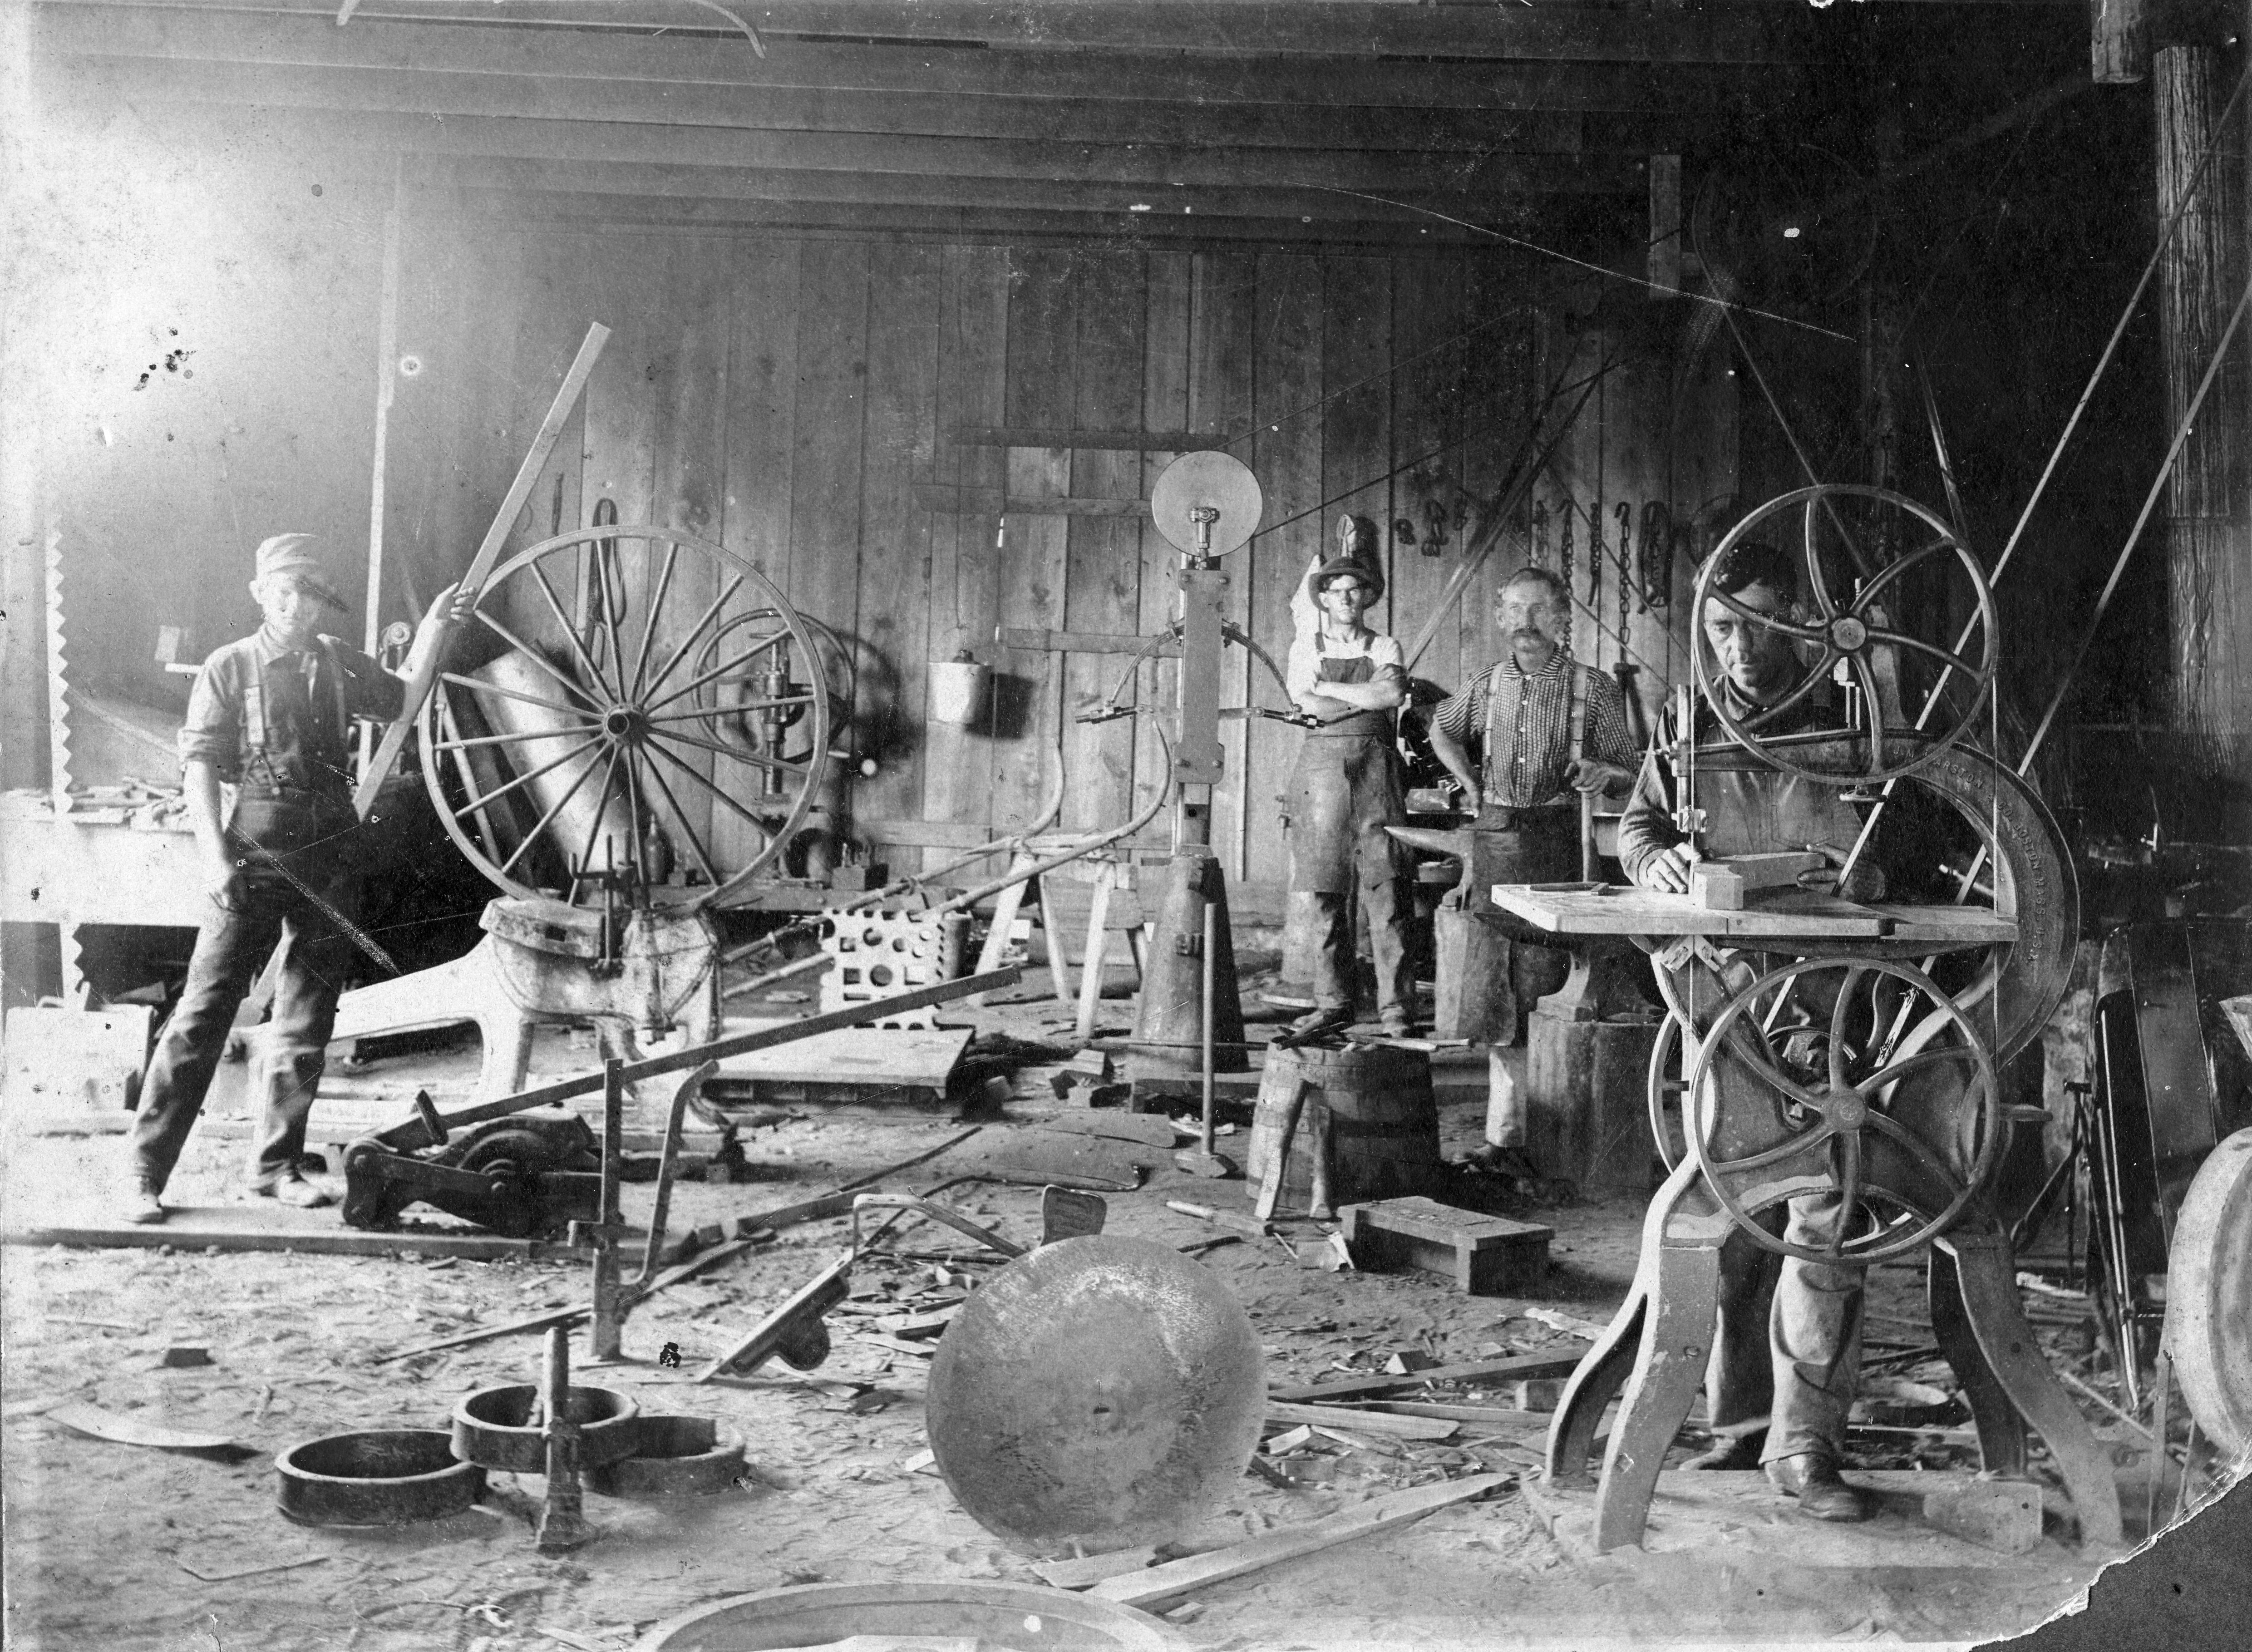 Wagon making or repair shop